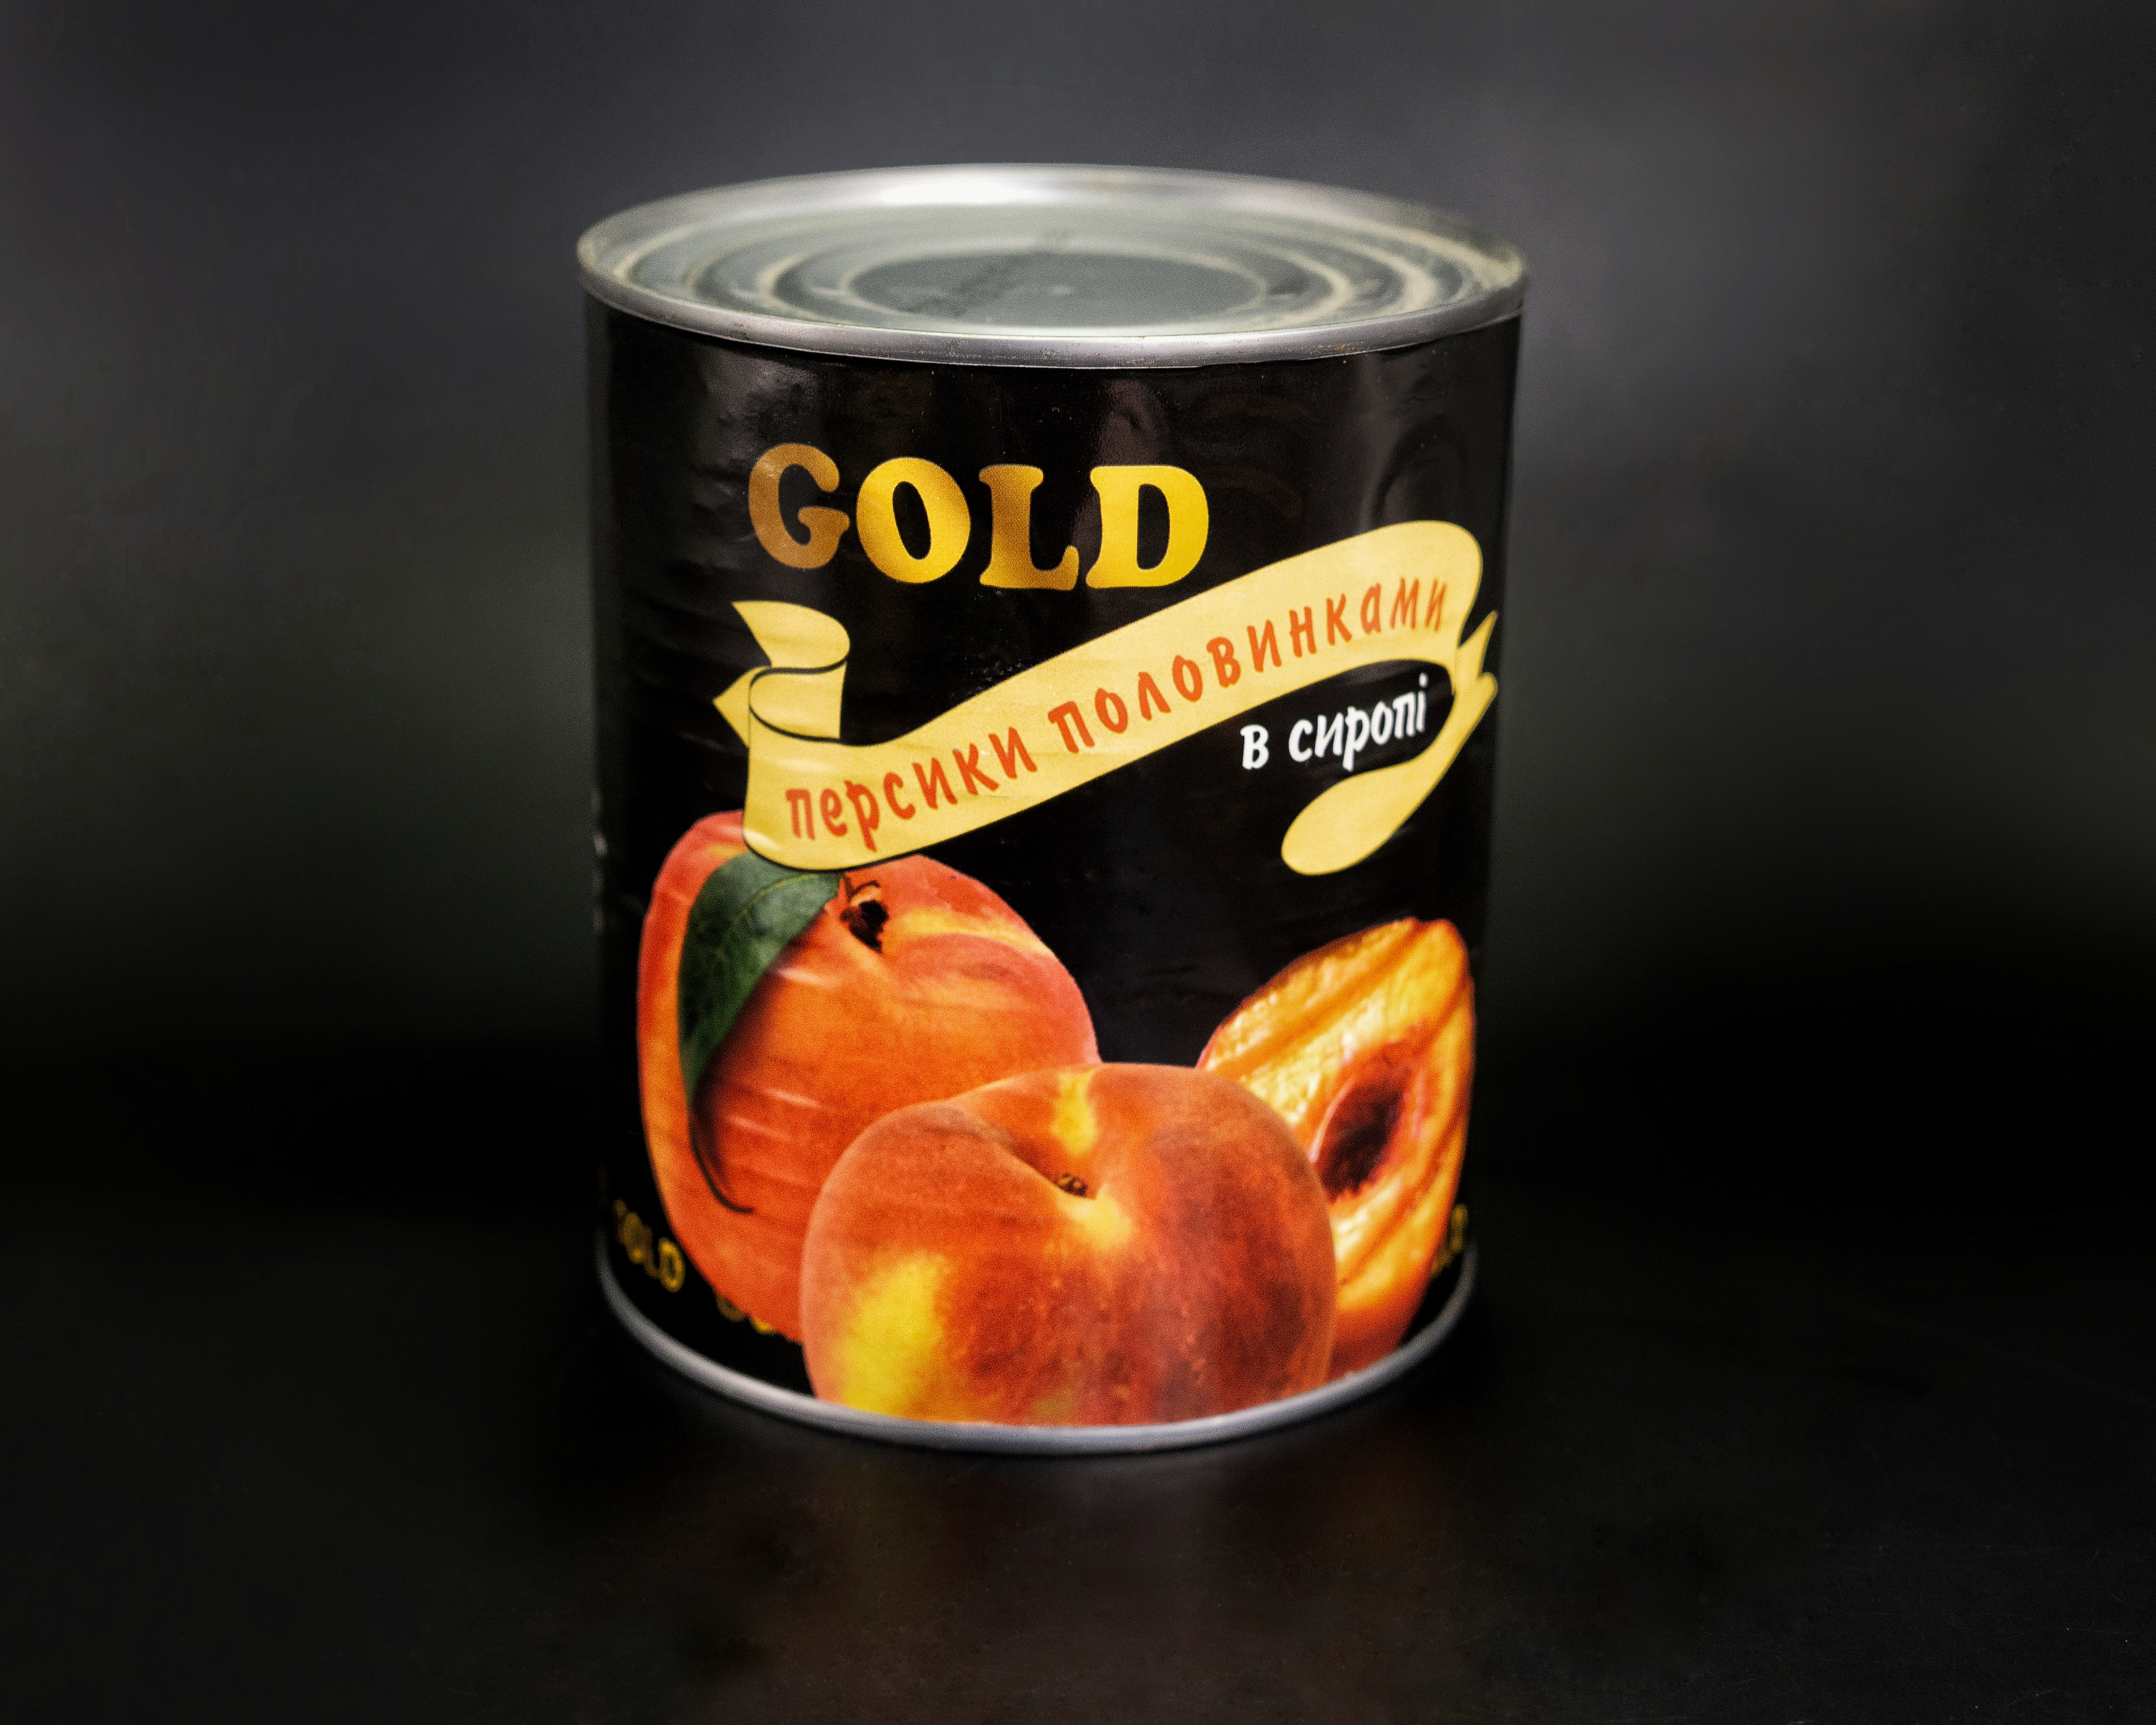 Персики половинки в сиропе Gold